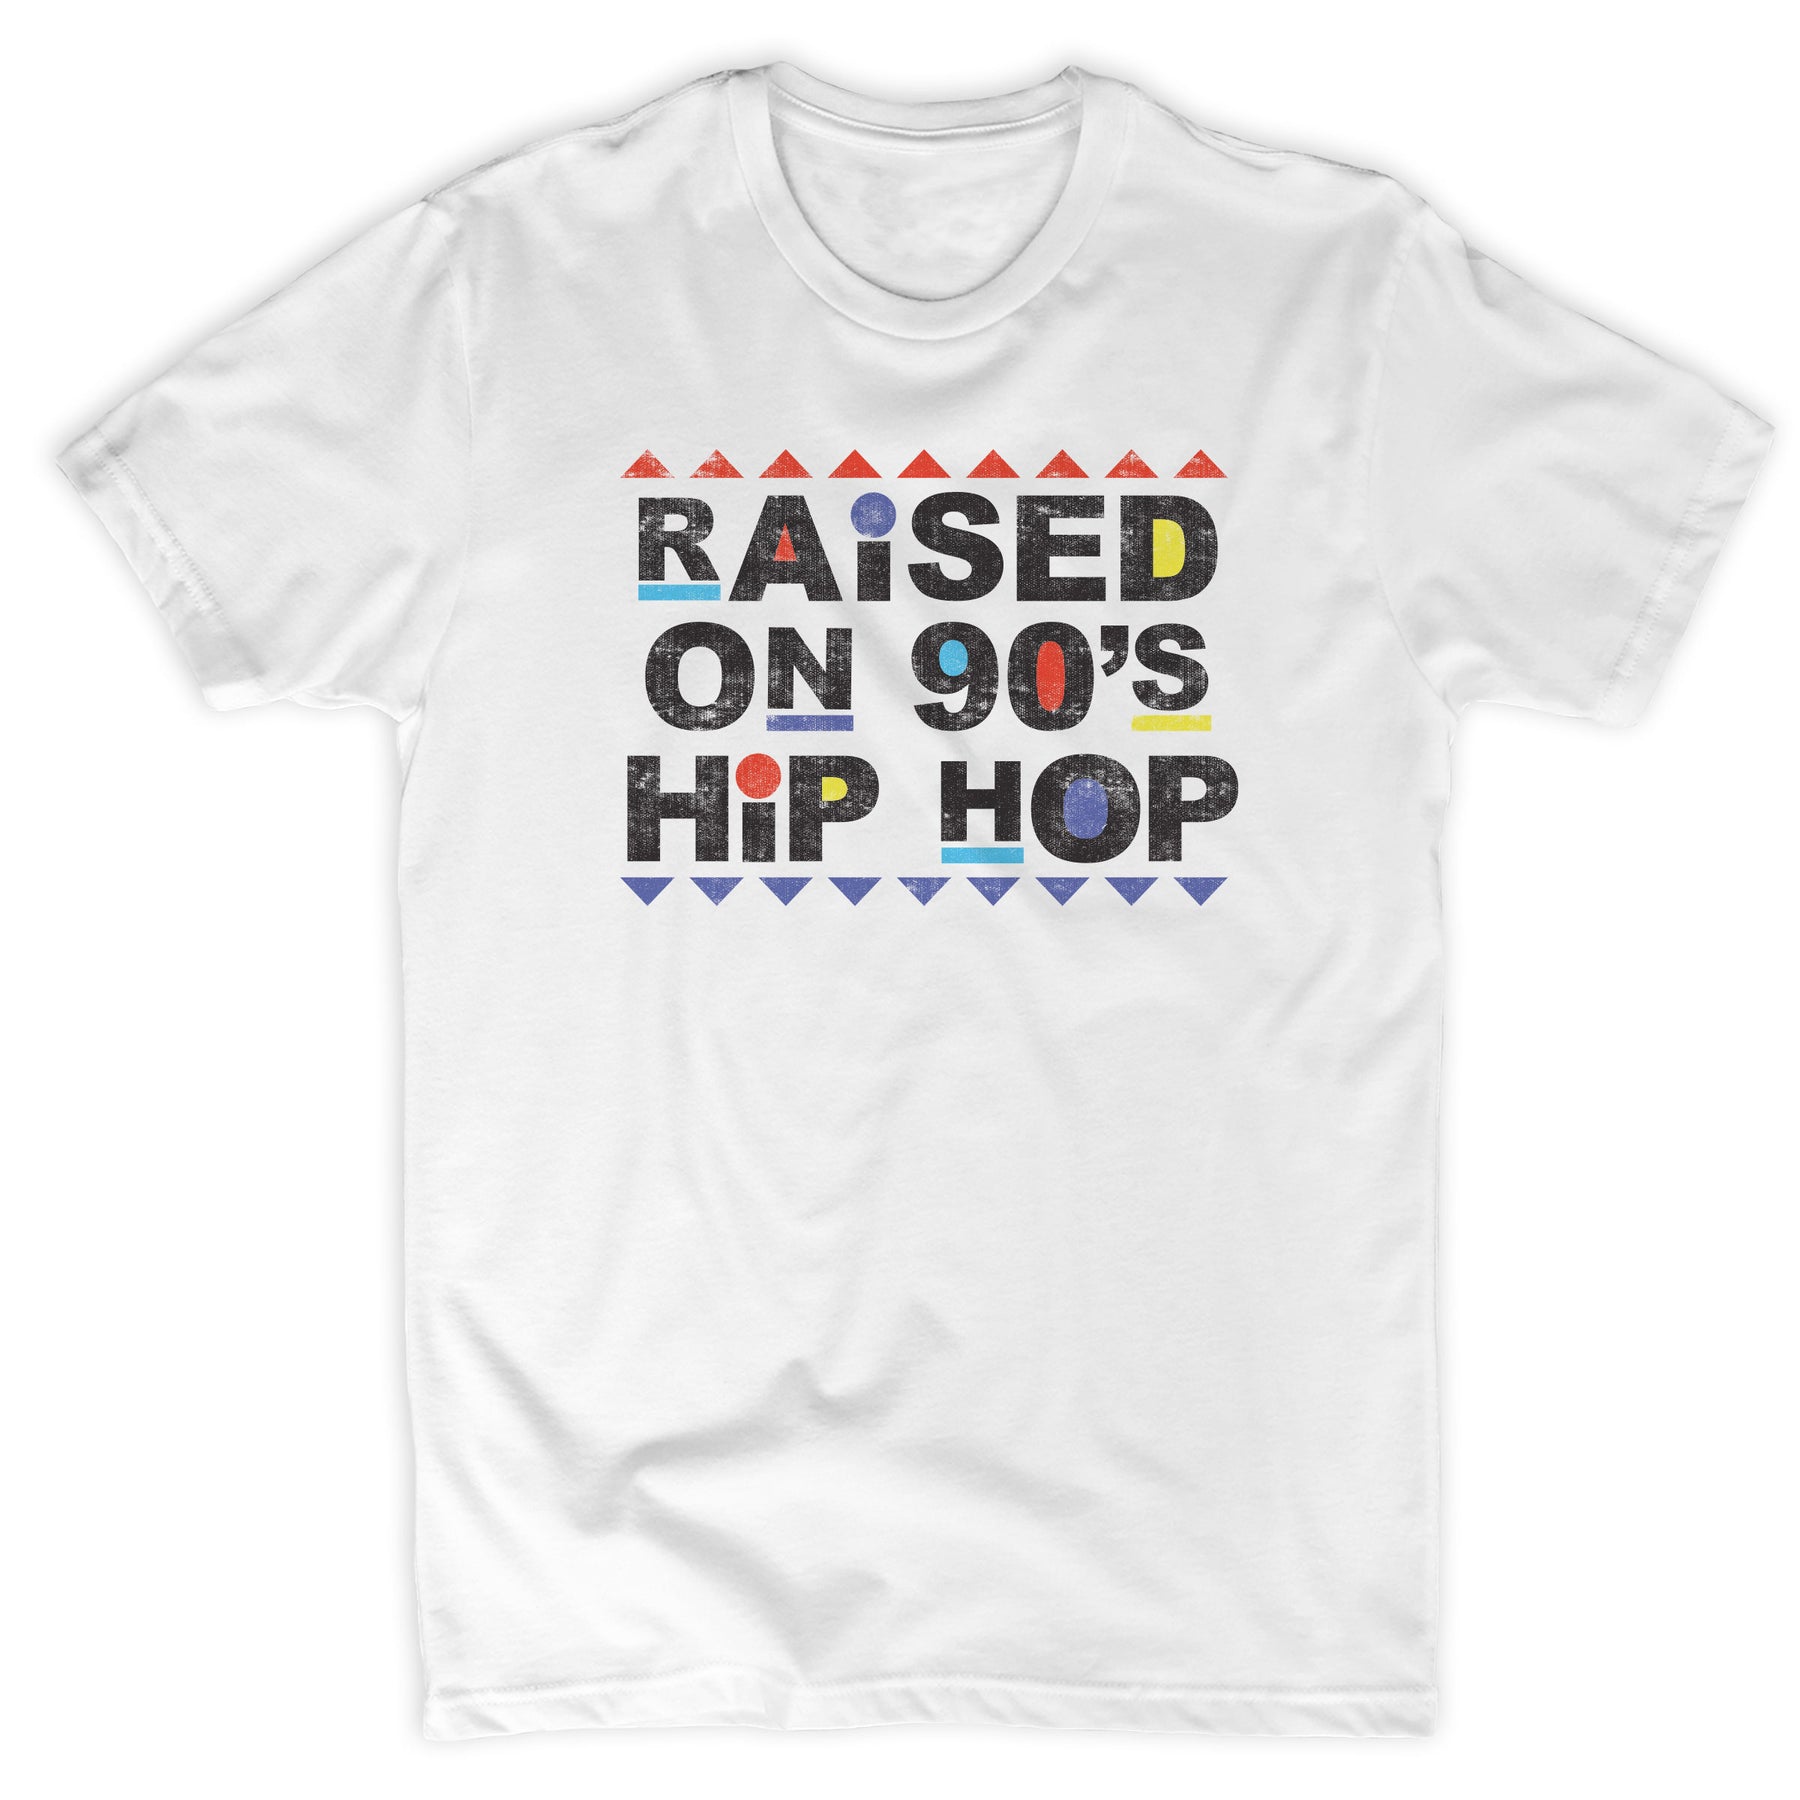 Raised on 90s Hip Hop Tee